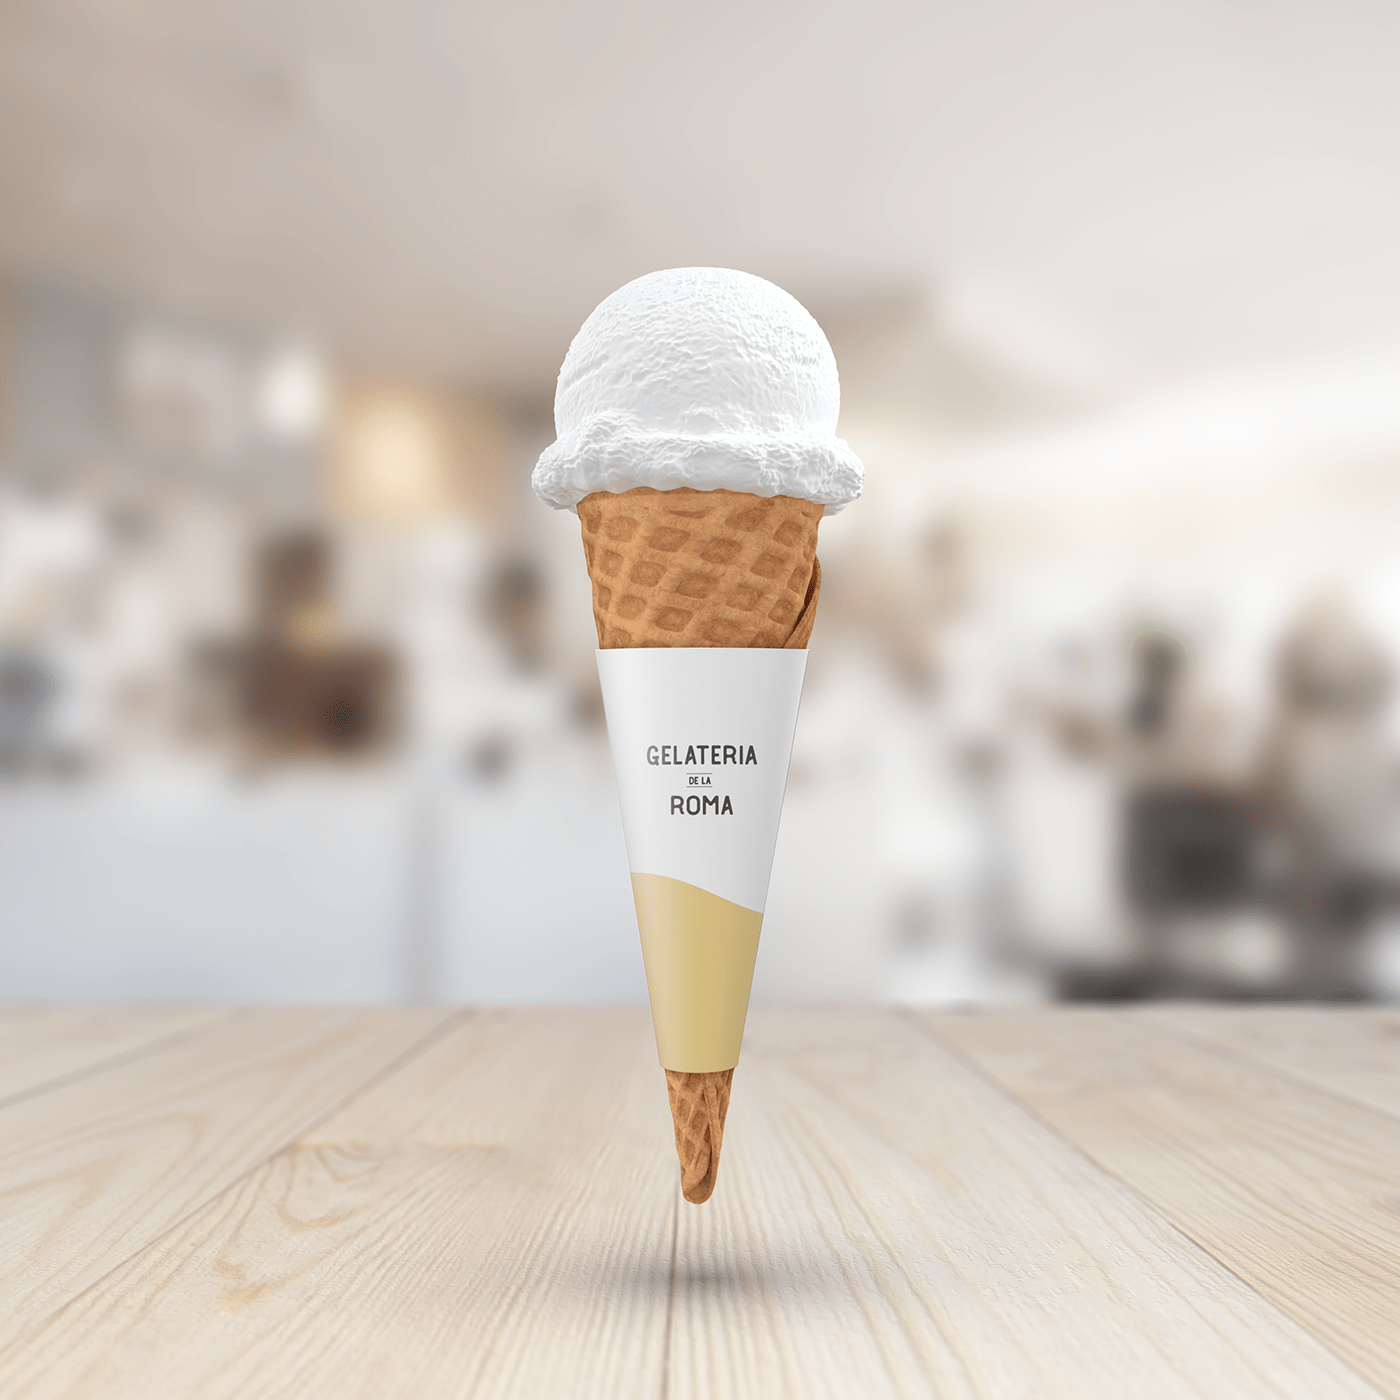 Ice cream shop branding.